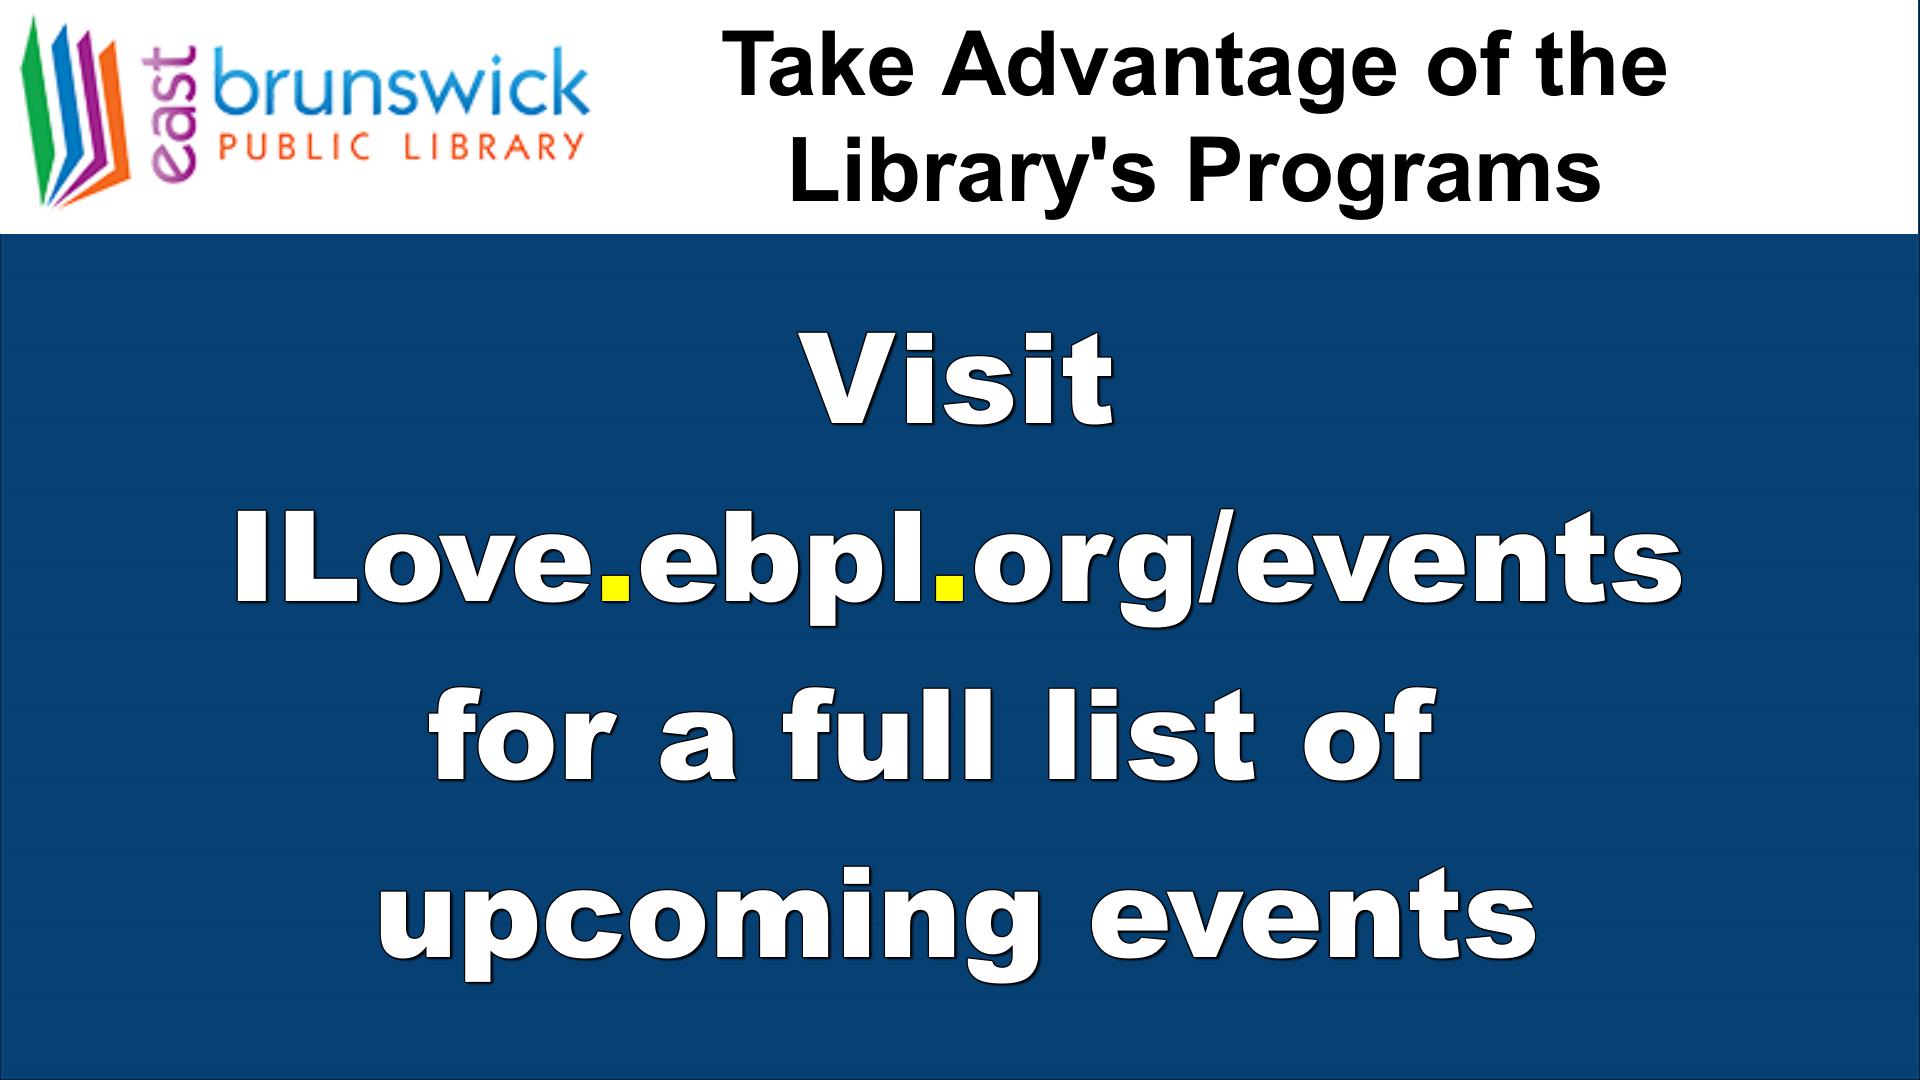 Visit iLove.ebpl.org/events